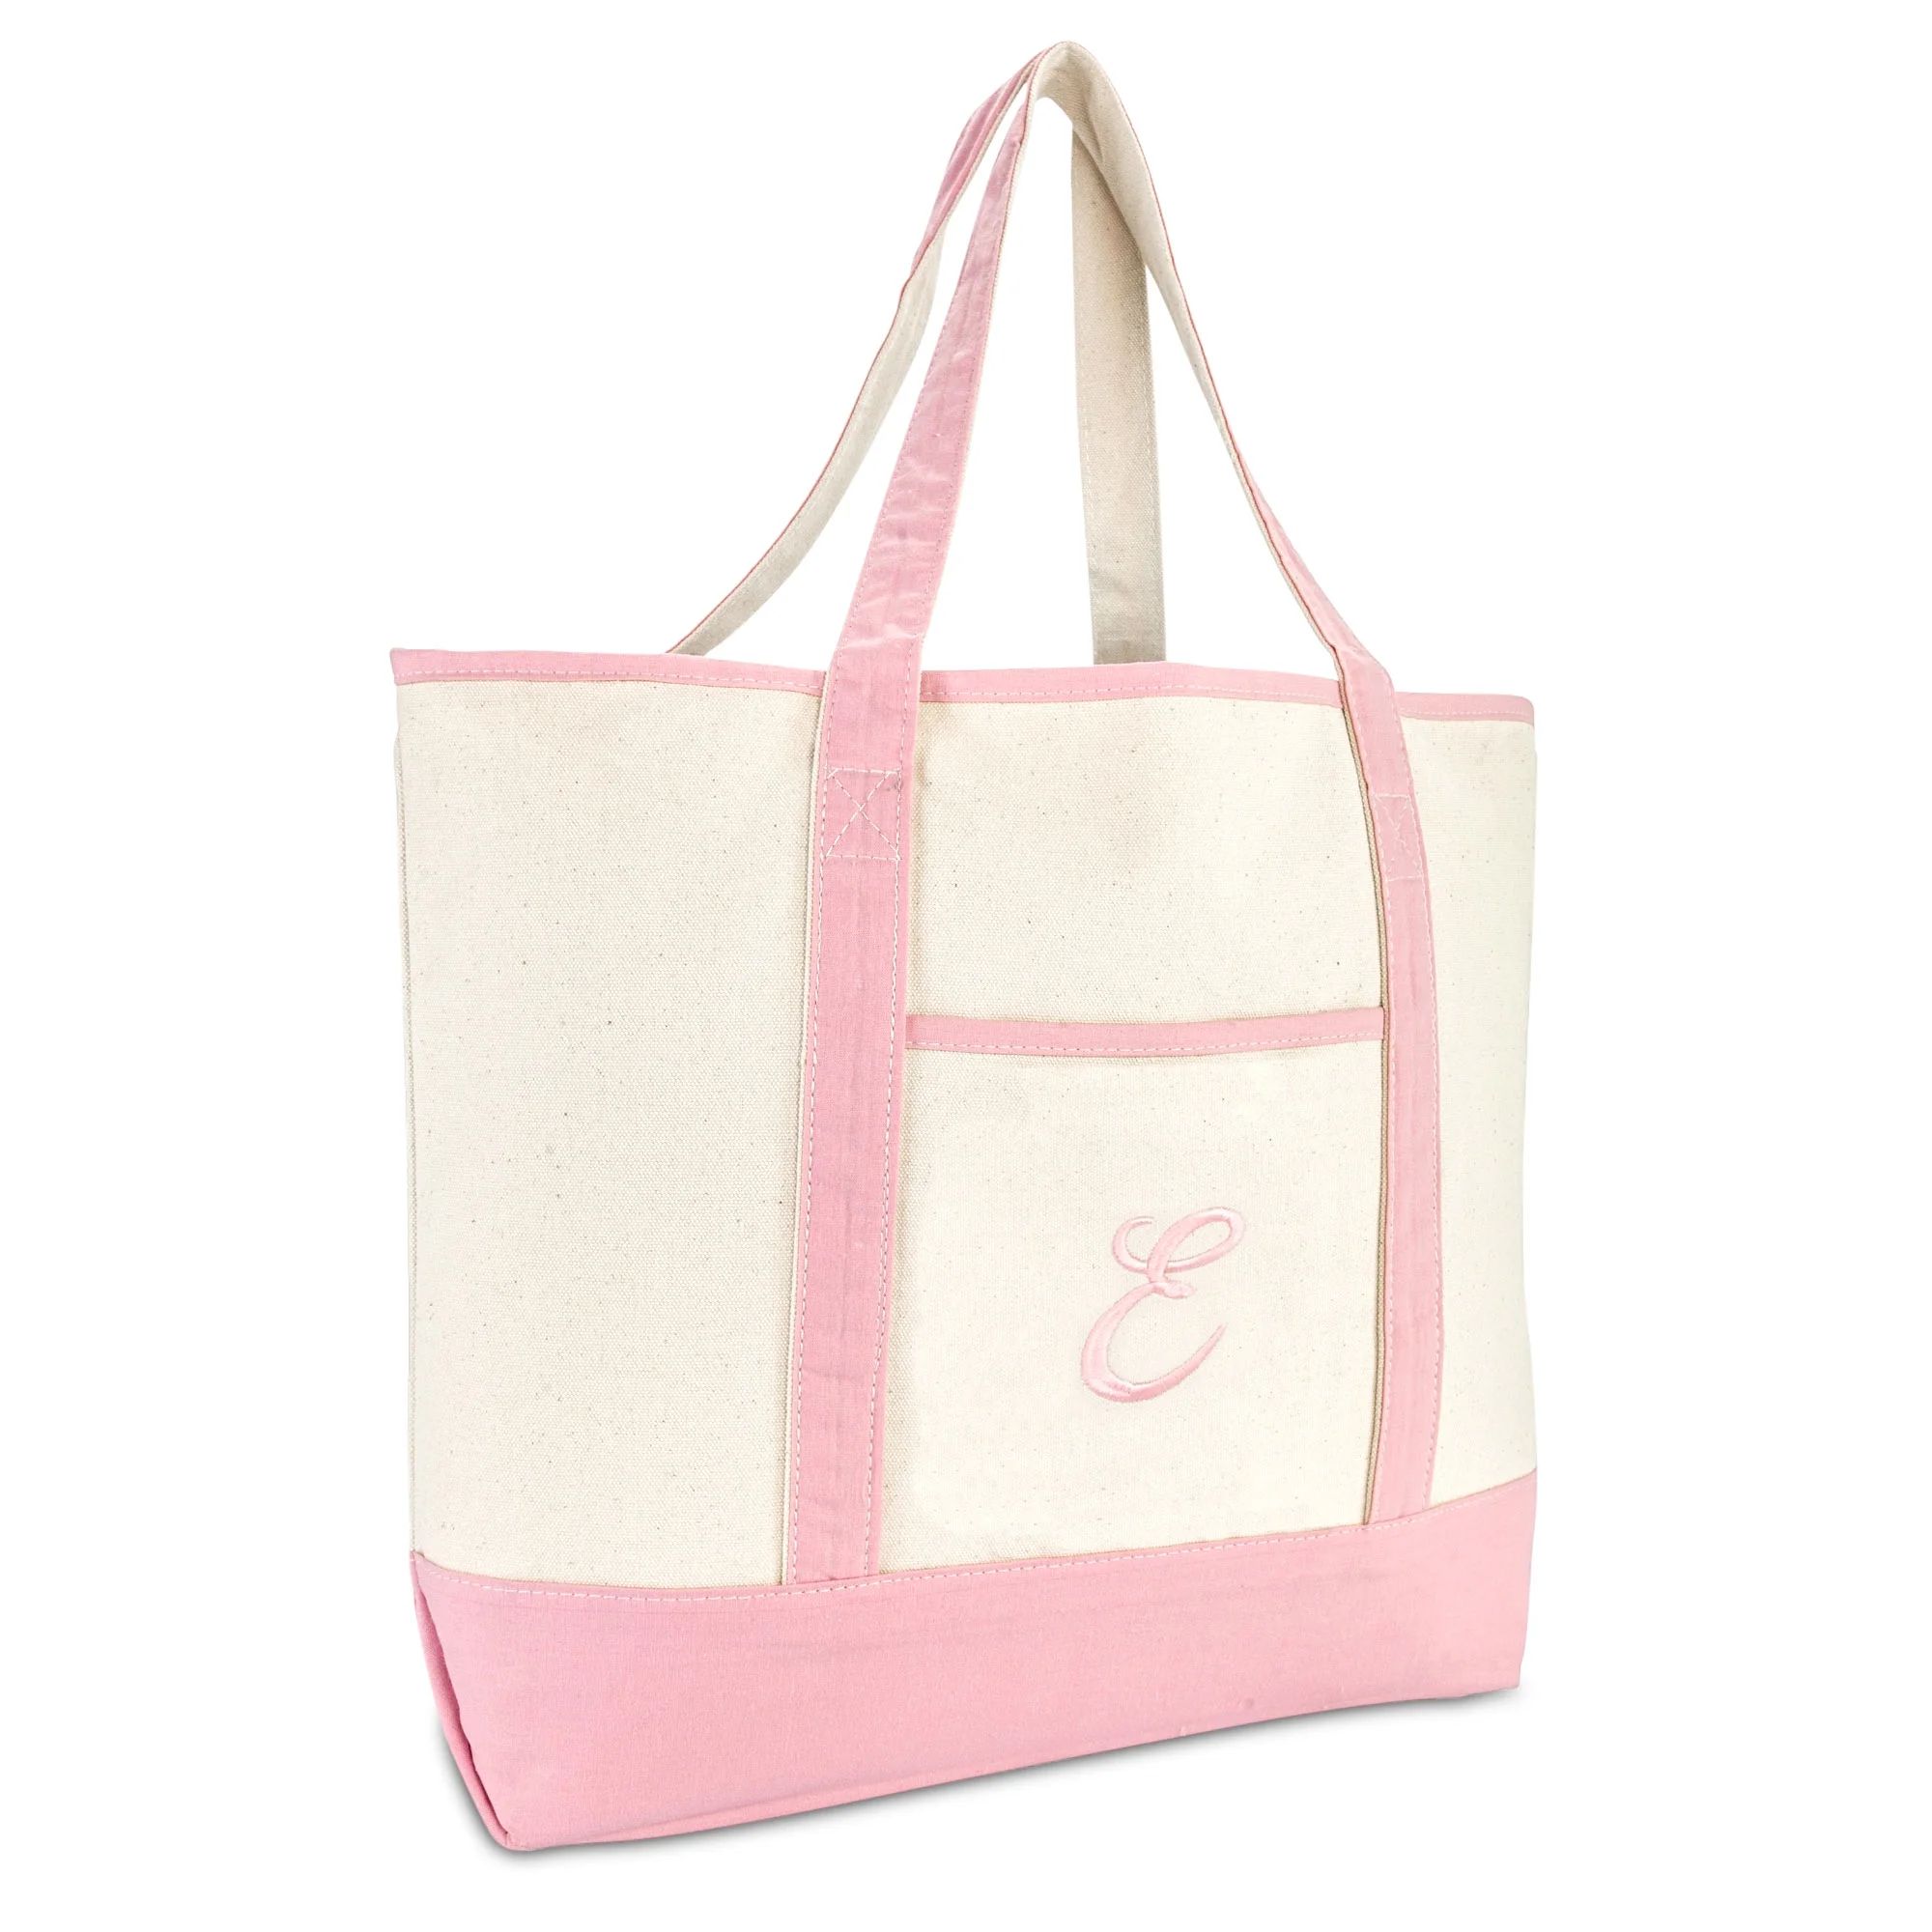 DALIX Women's Cotton Canvas Tote Bag Large Shoulder Bags Pink Monogram E | Walmart (US)